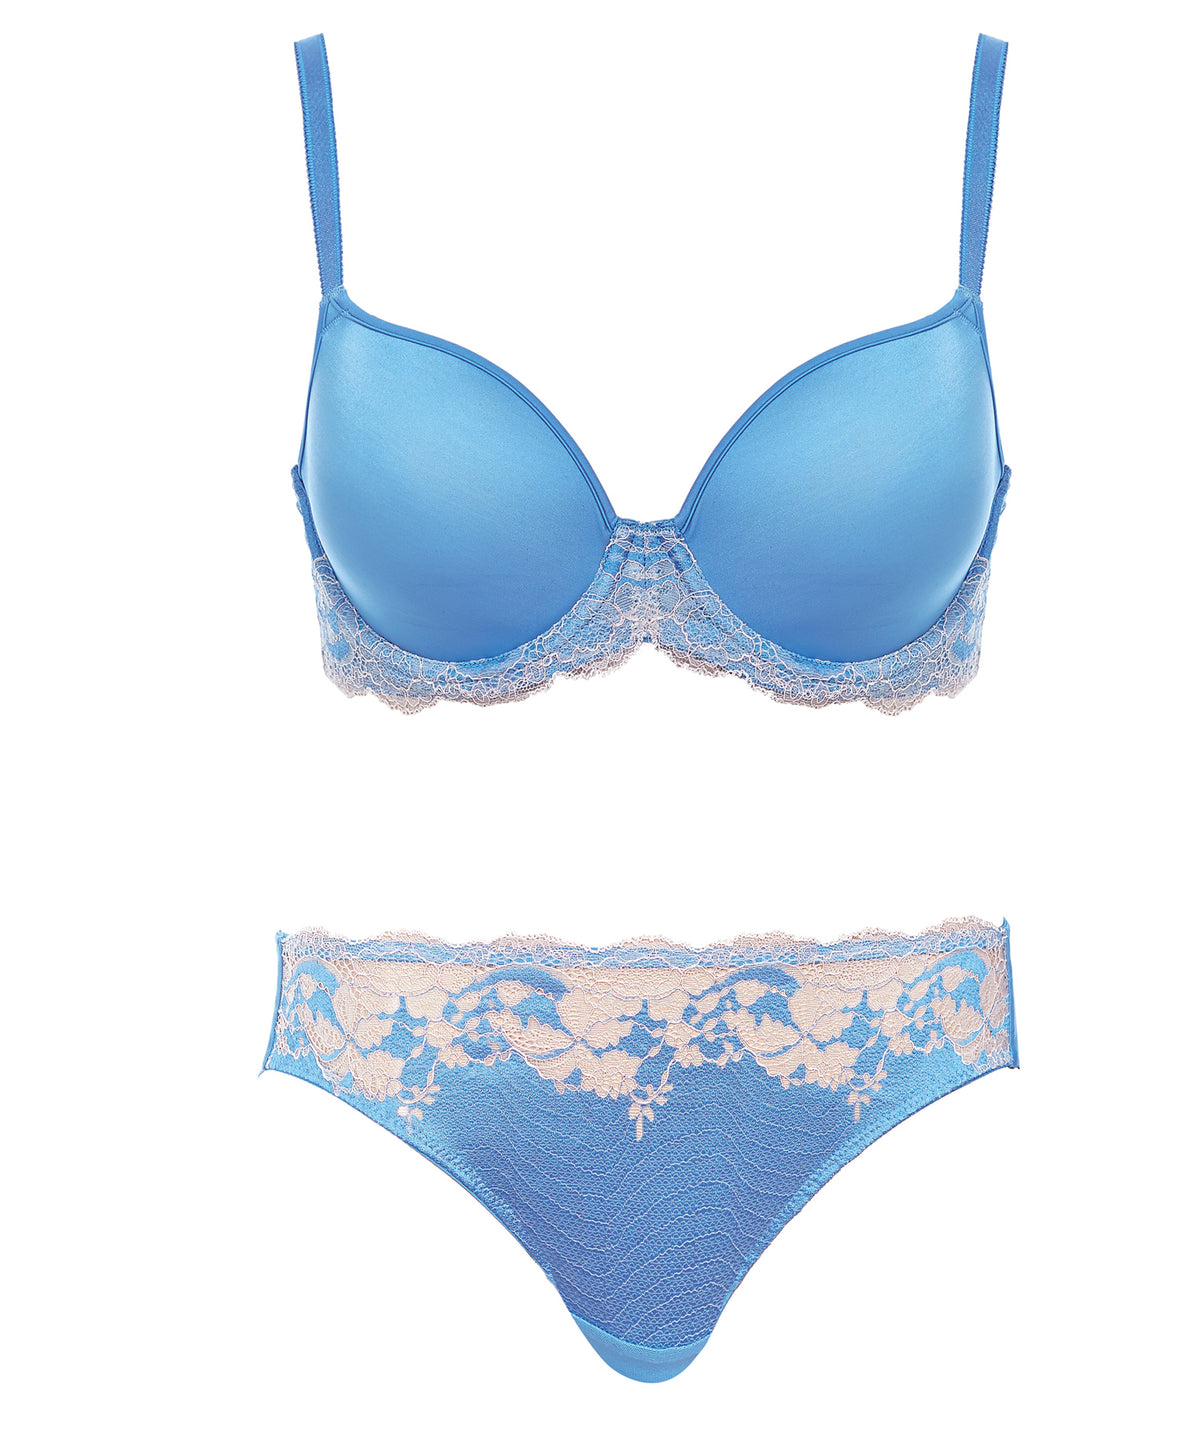 36C BRA LOT 3 BRAS UNDERWIRE BLUE Bali Lace Vtg Wacoal & Turquois Coco  Lingerie £28.26 - PicClick UK